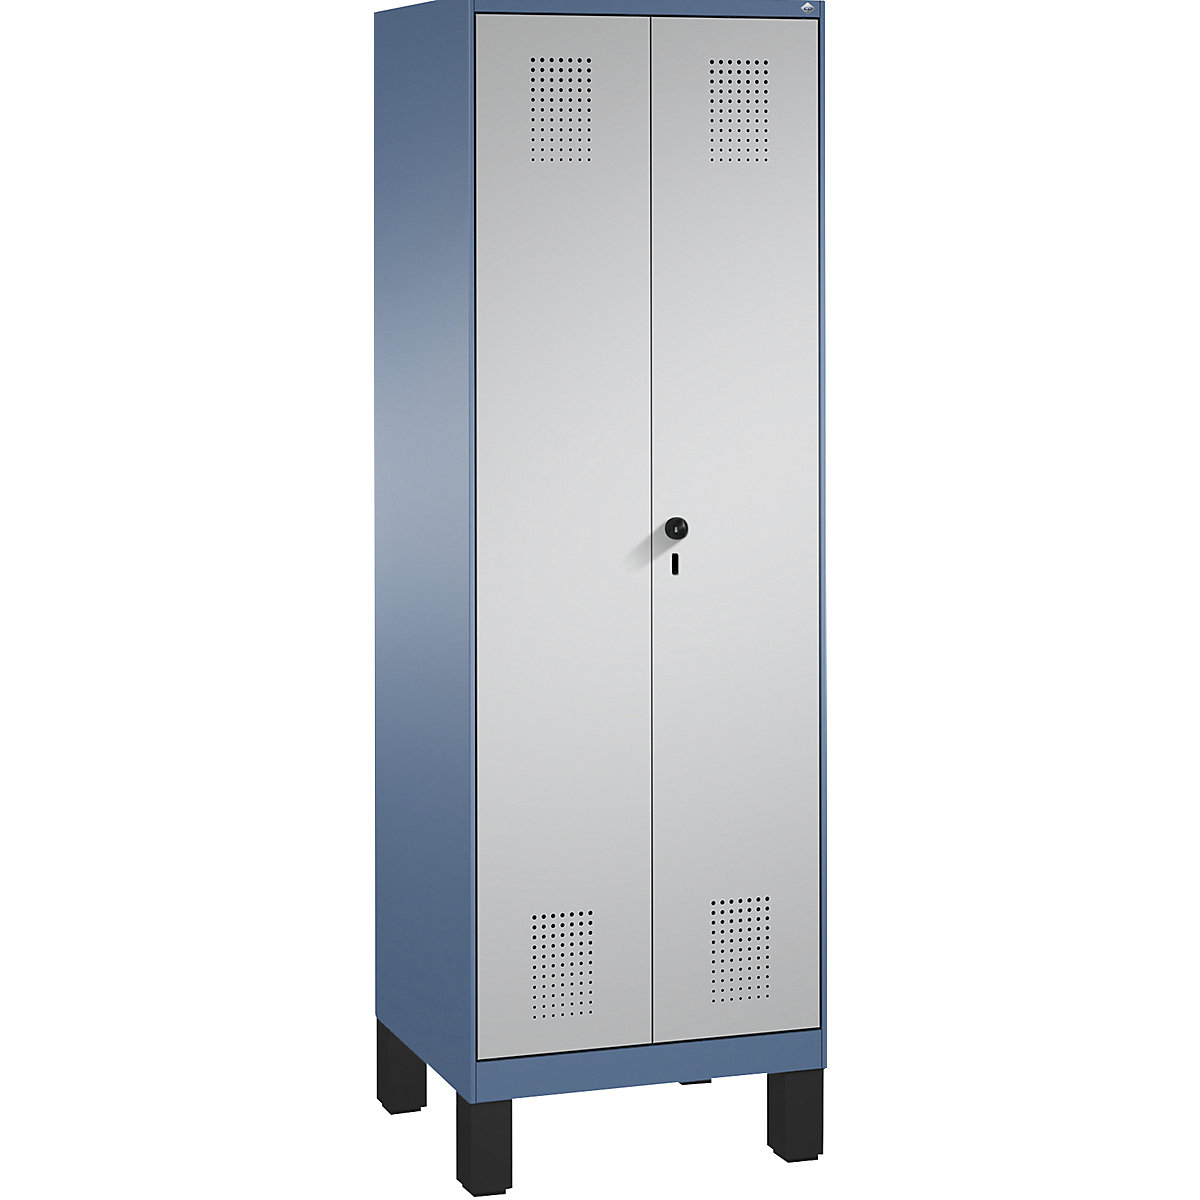 EVOLO takarítószer-/készüléktároló szekrény – C+P, rövidített válaszfal, 6 akasztó, rekeszek 2 x 300 mm, lábakkal, távolikék / fehéralumínium-15